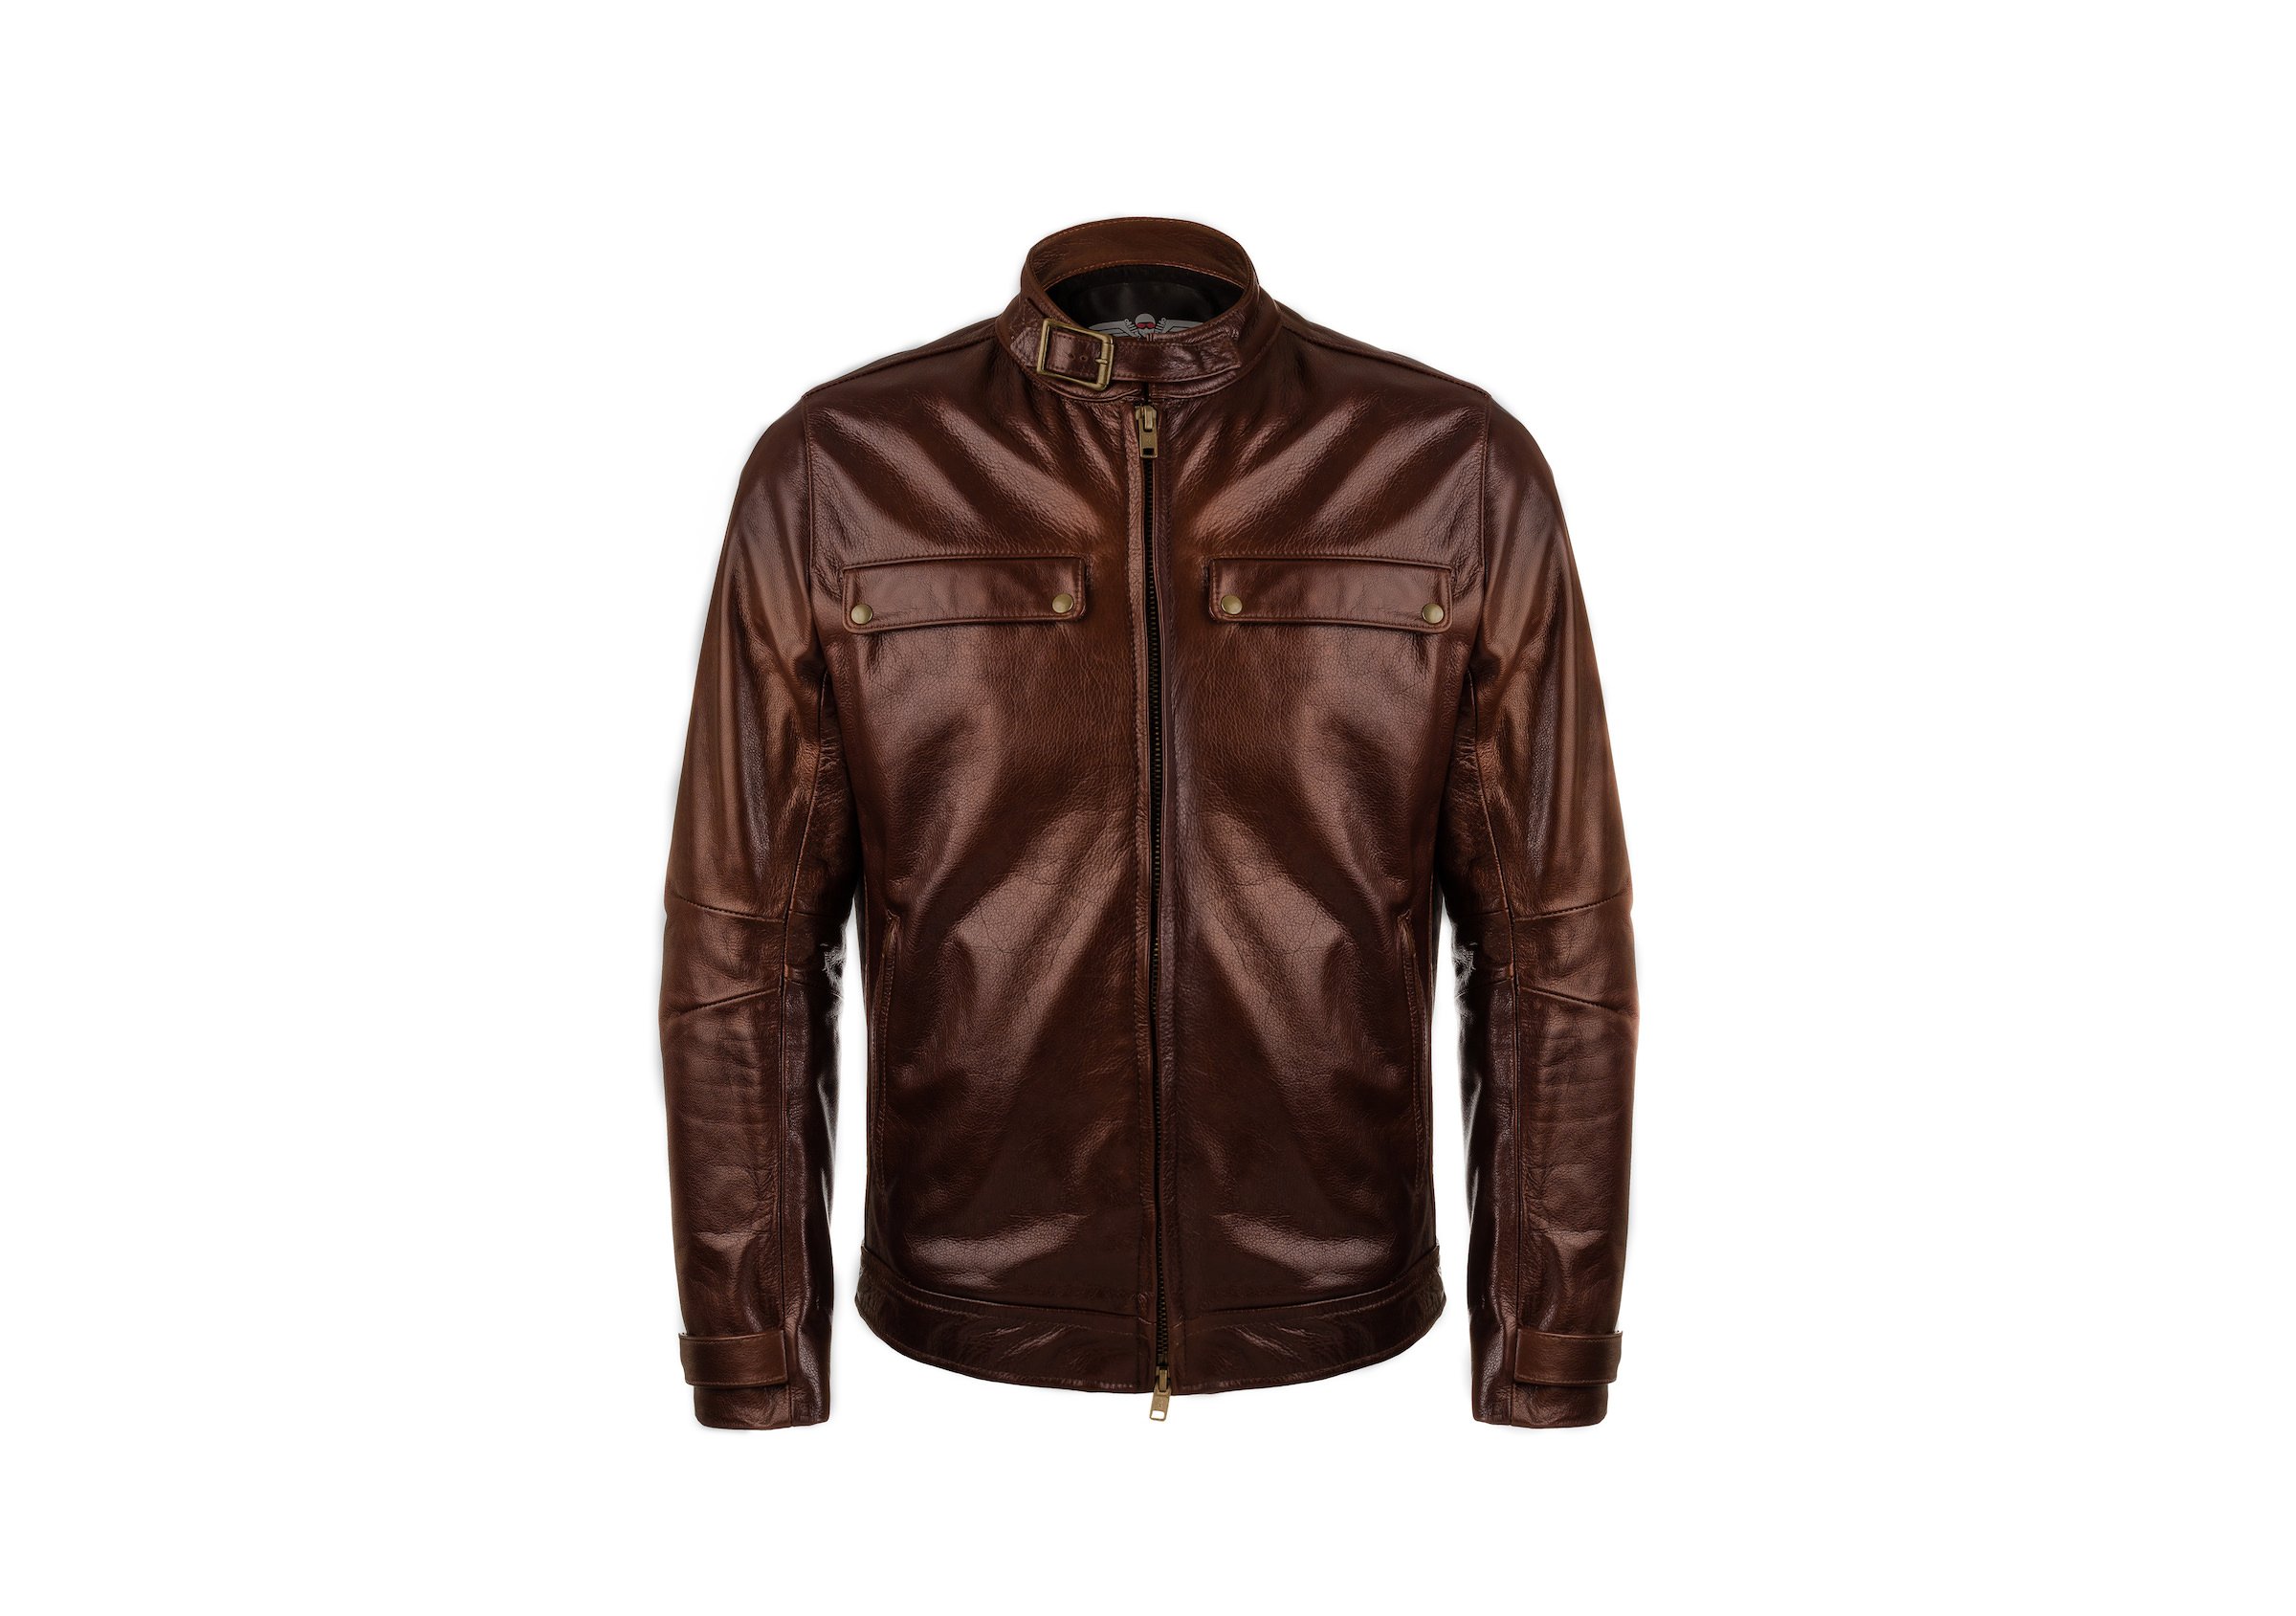 VKTRE Moto Co Heritage Leather Road Jacket